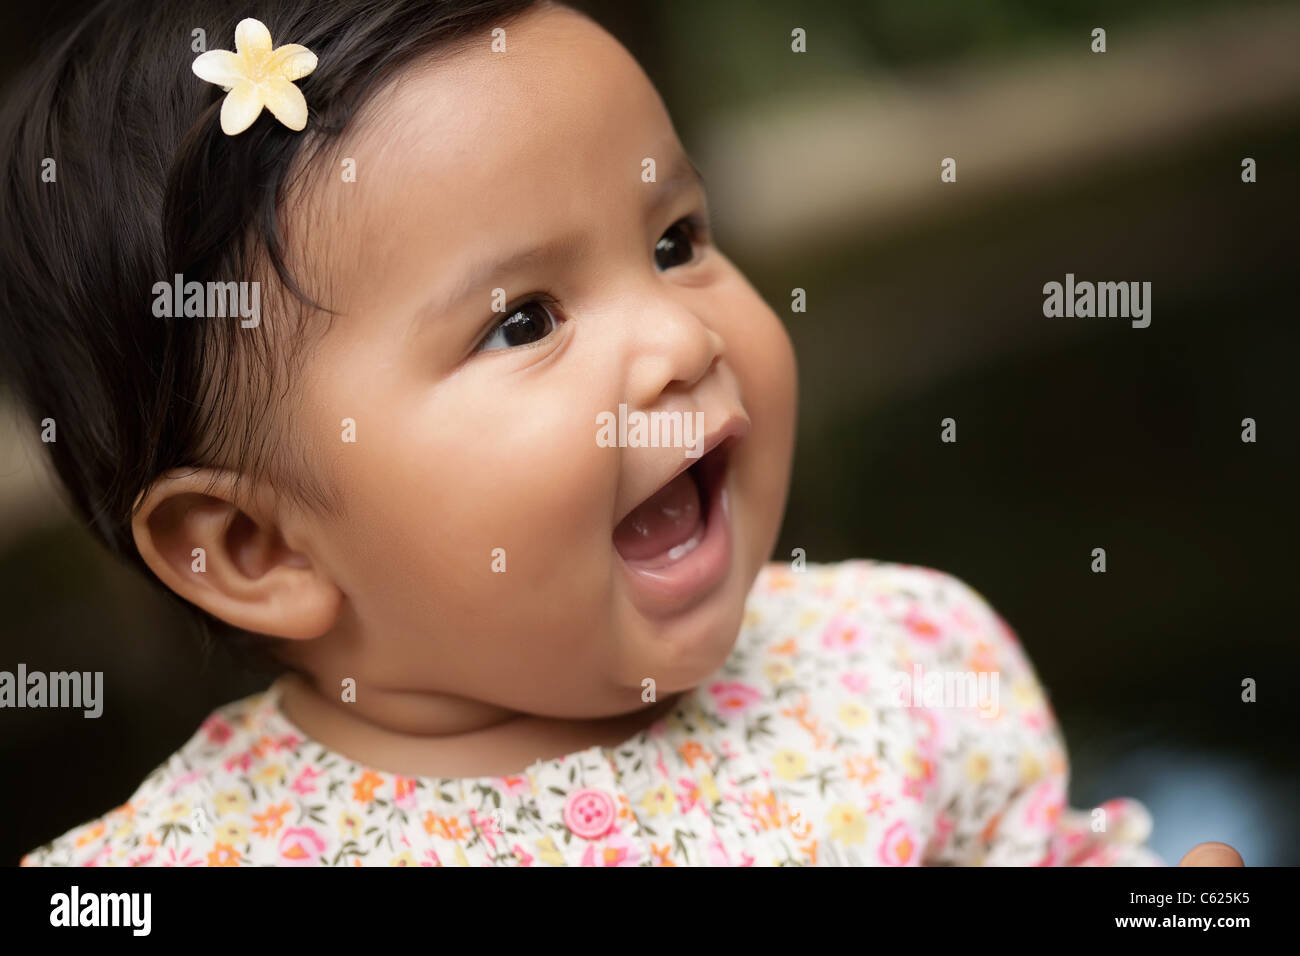 Happy baby girl de crier ou de parler ses premières paroles, de découvrir sa voix dans la petite enfance Banque D'Images